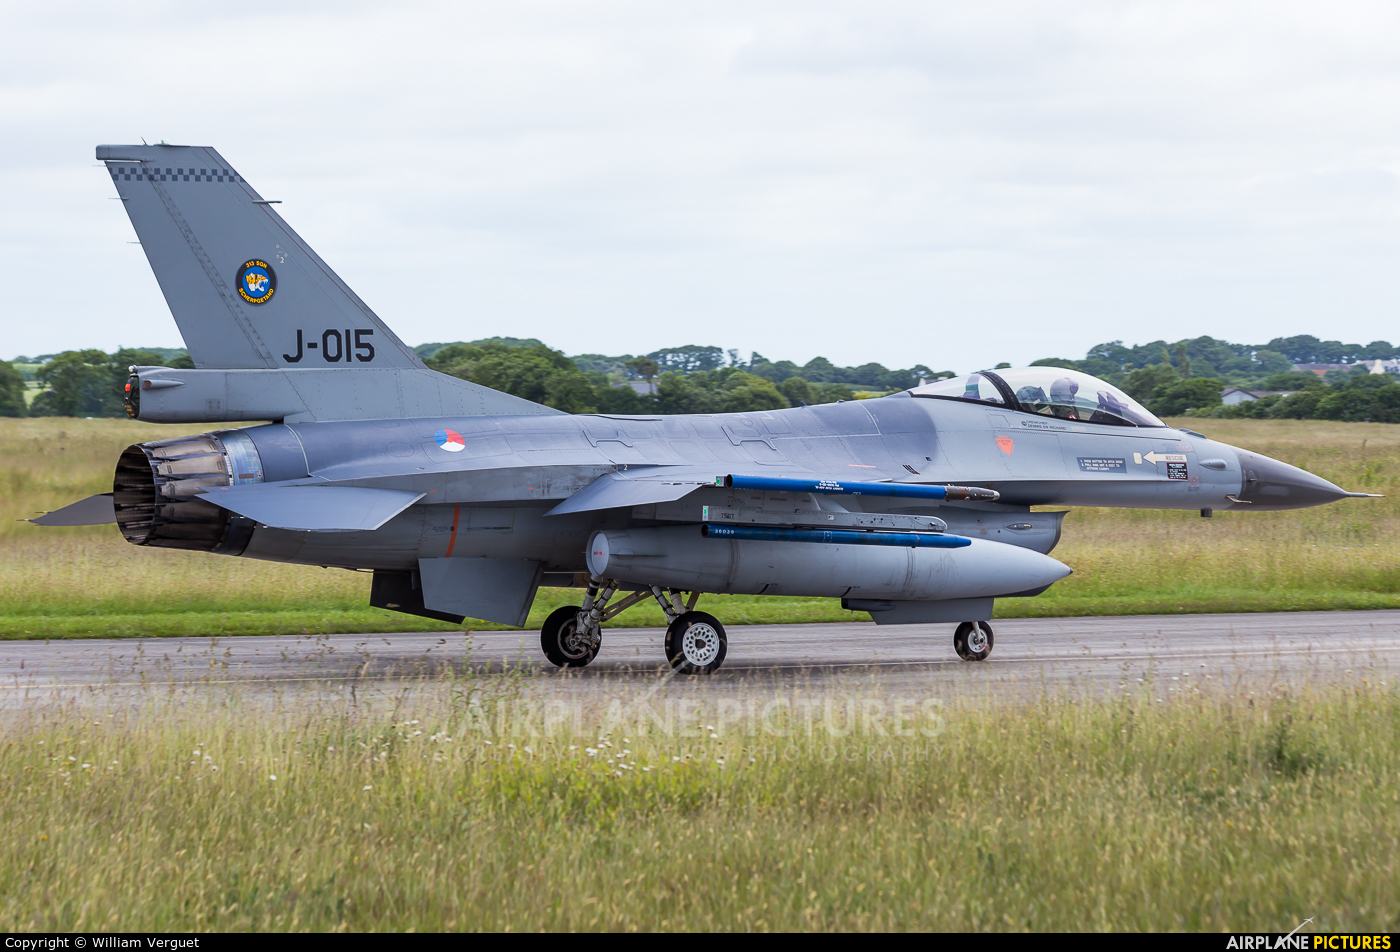 Netherlands - Air Force J-015 aircraft at Landivisiau